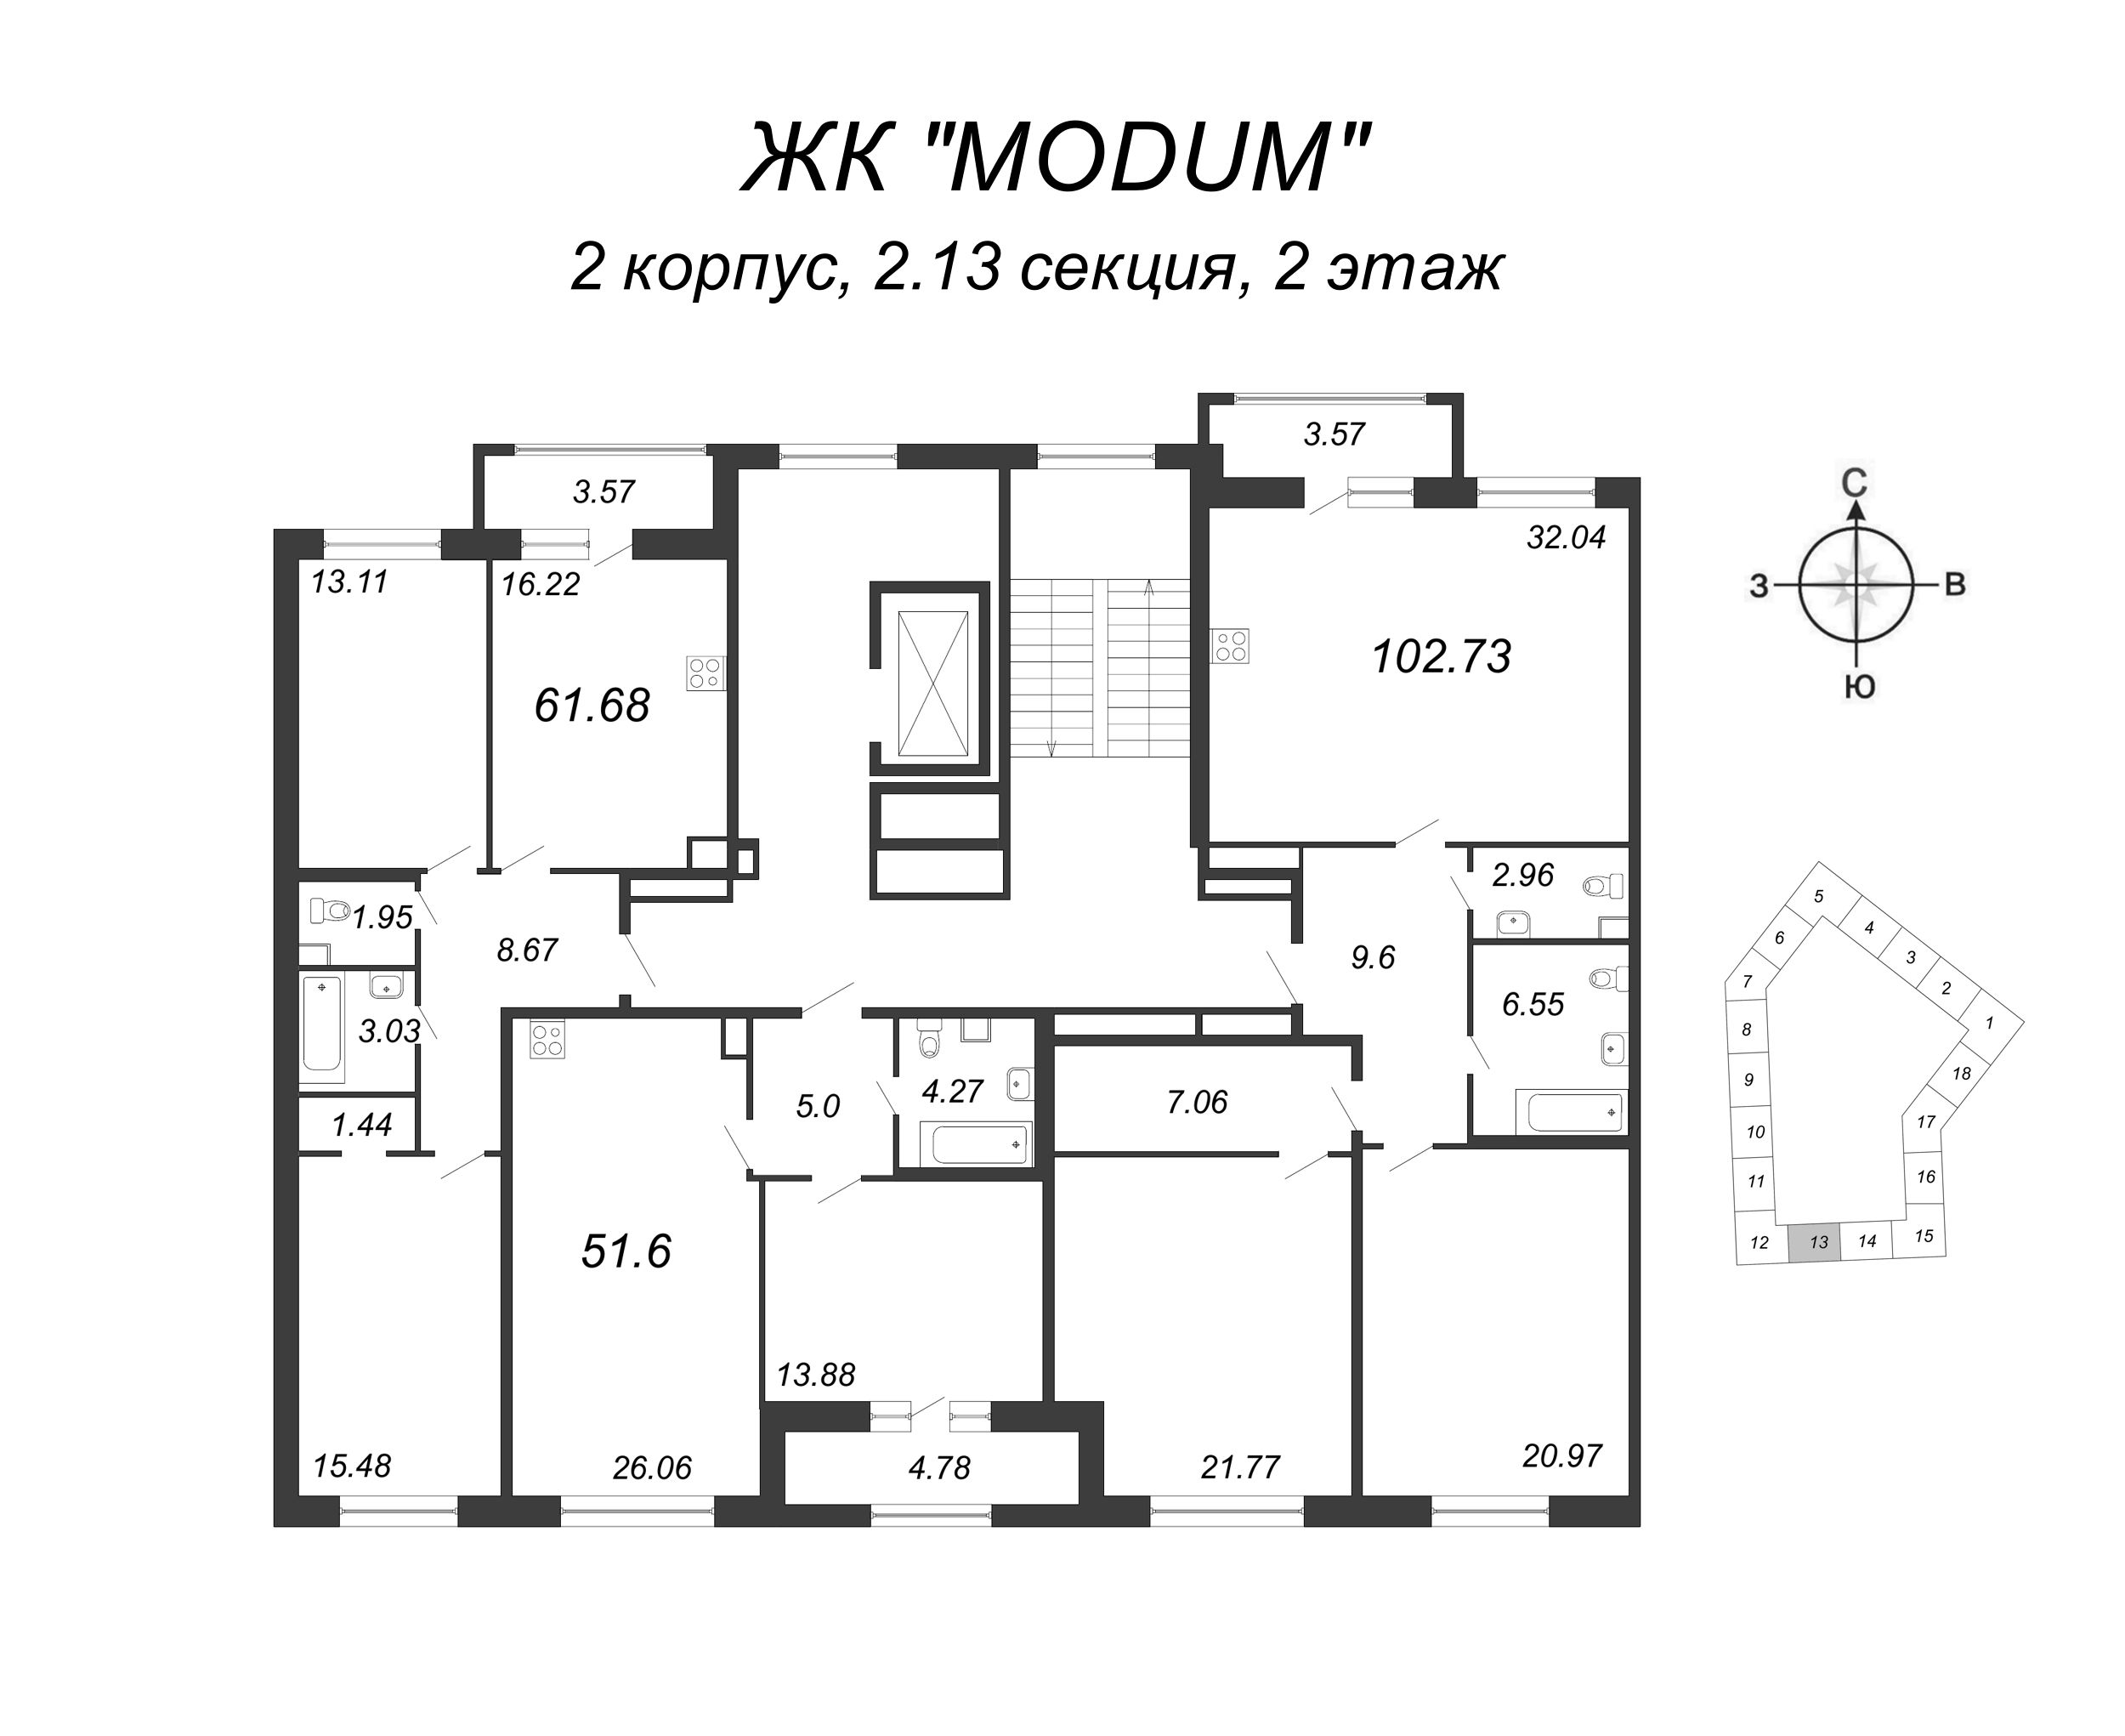 3-комнатная (Евро) квартира, 102.73 м² в ЖК "Modum" - планировка этажа